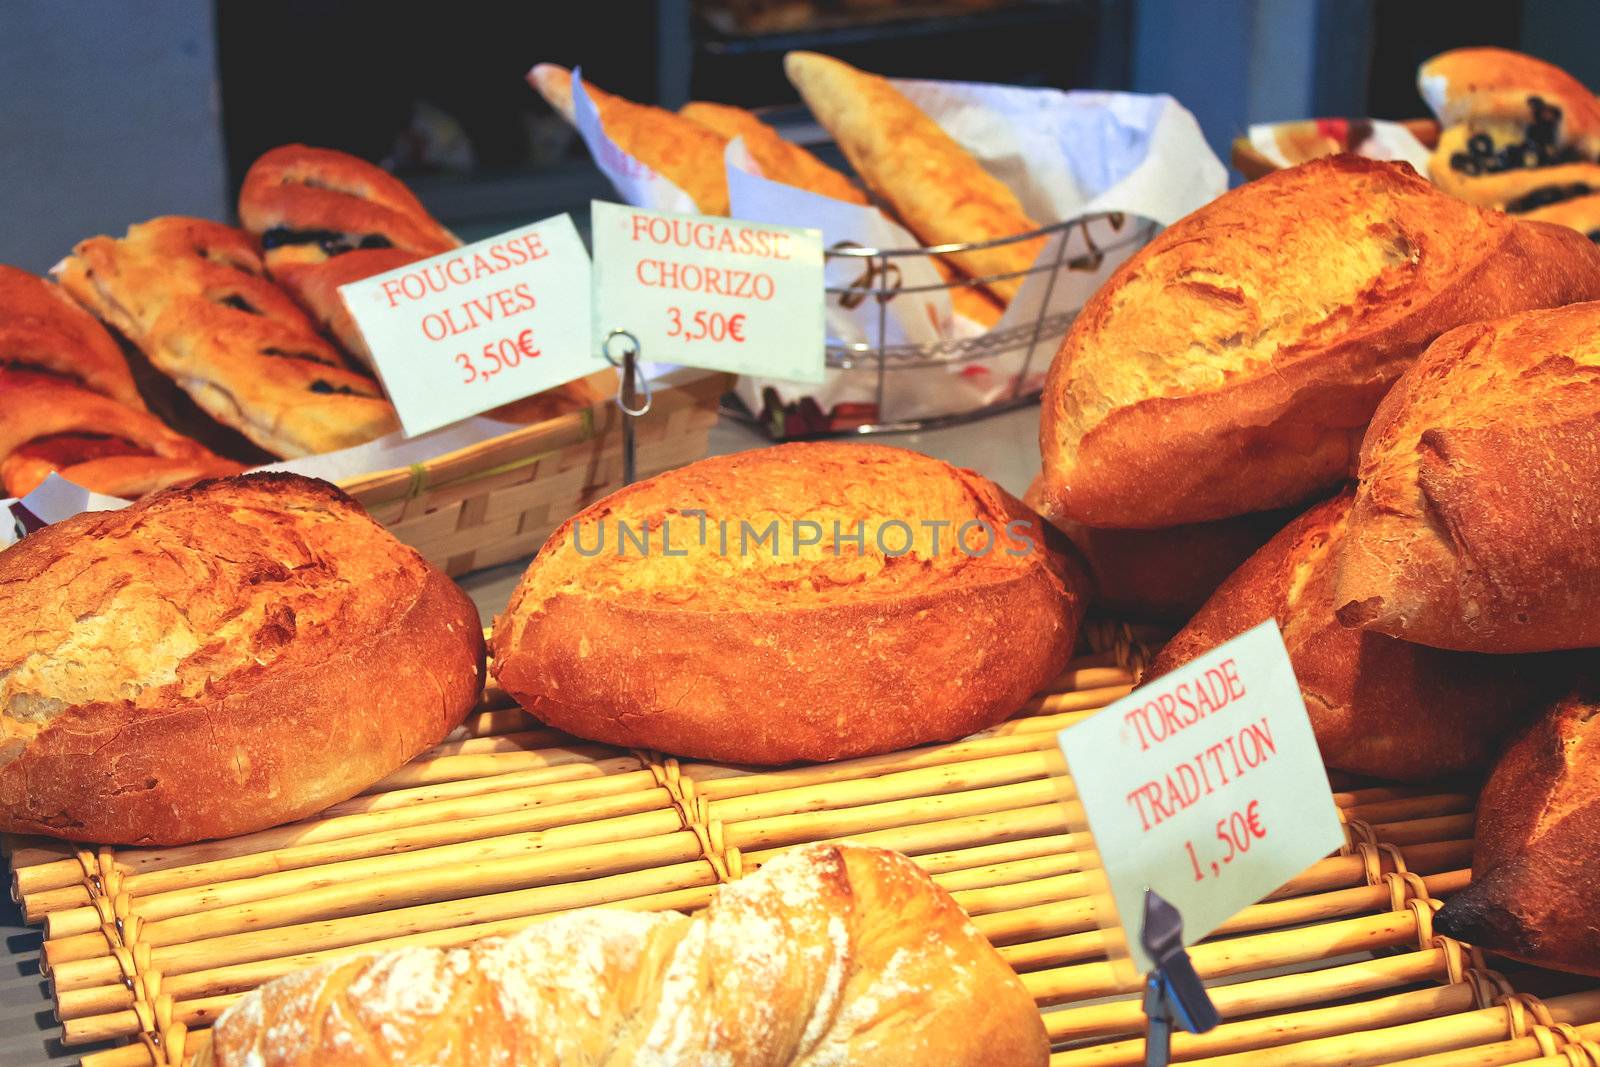 Bread in a shop window by NickNick